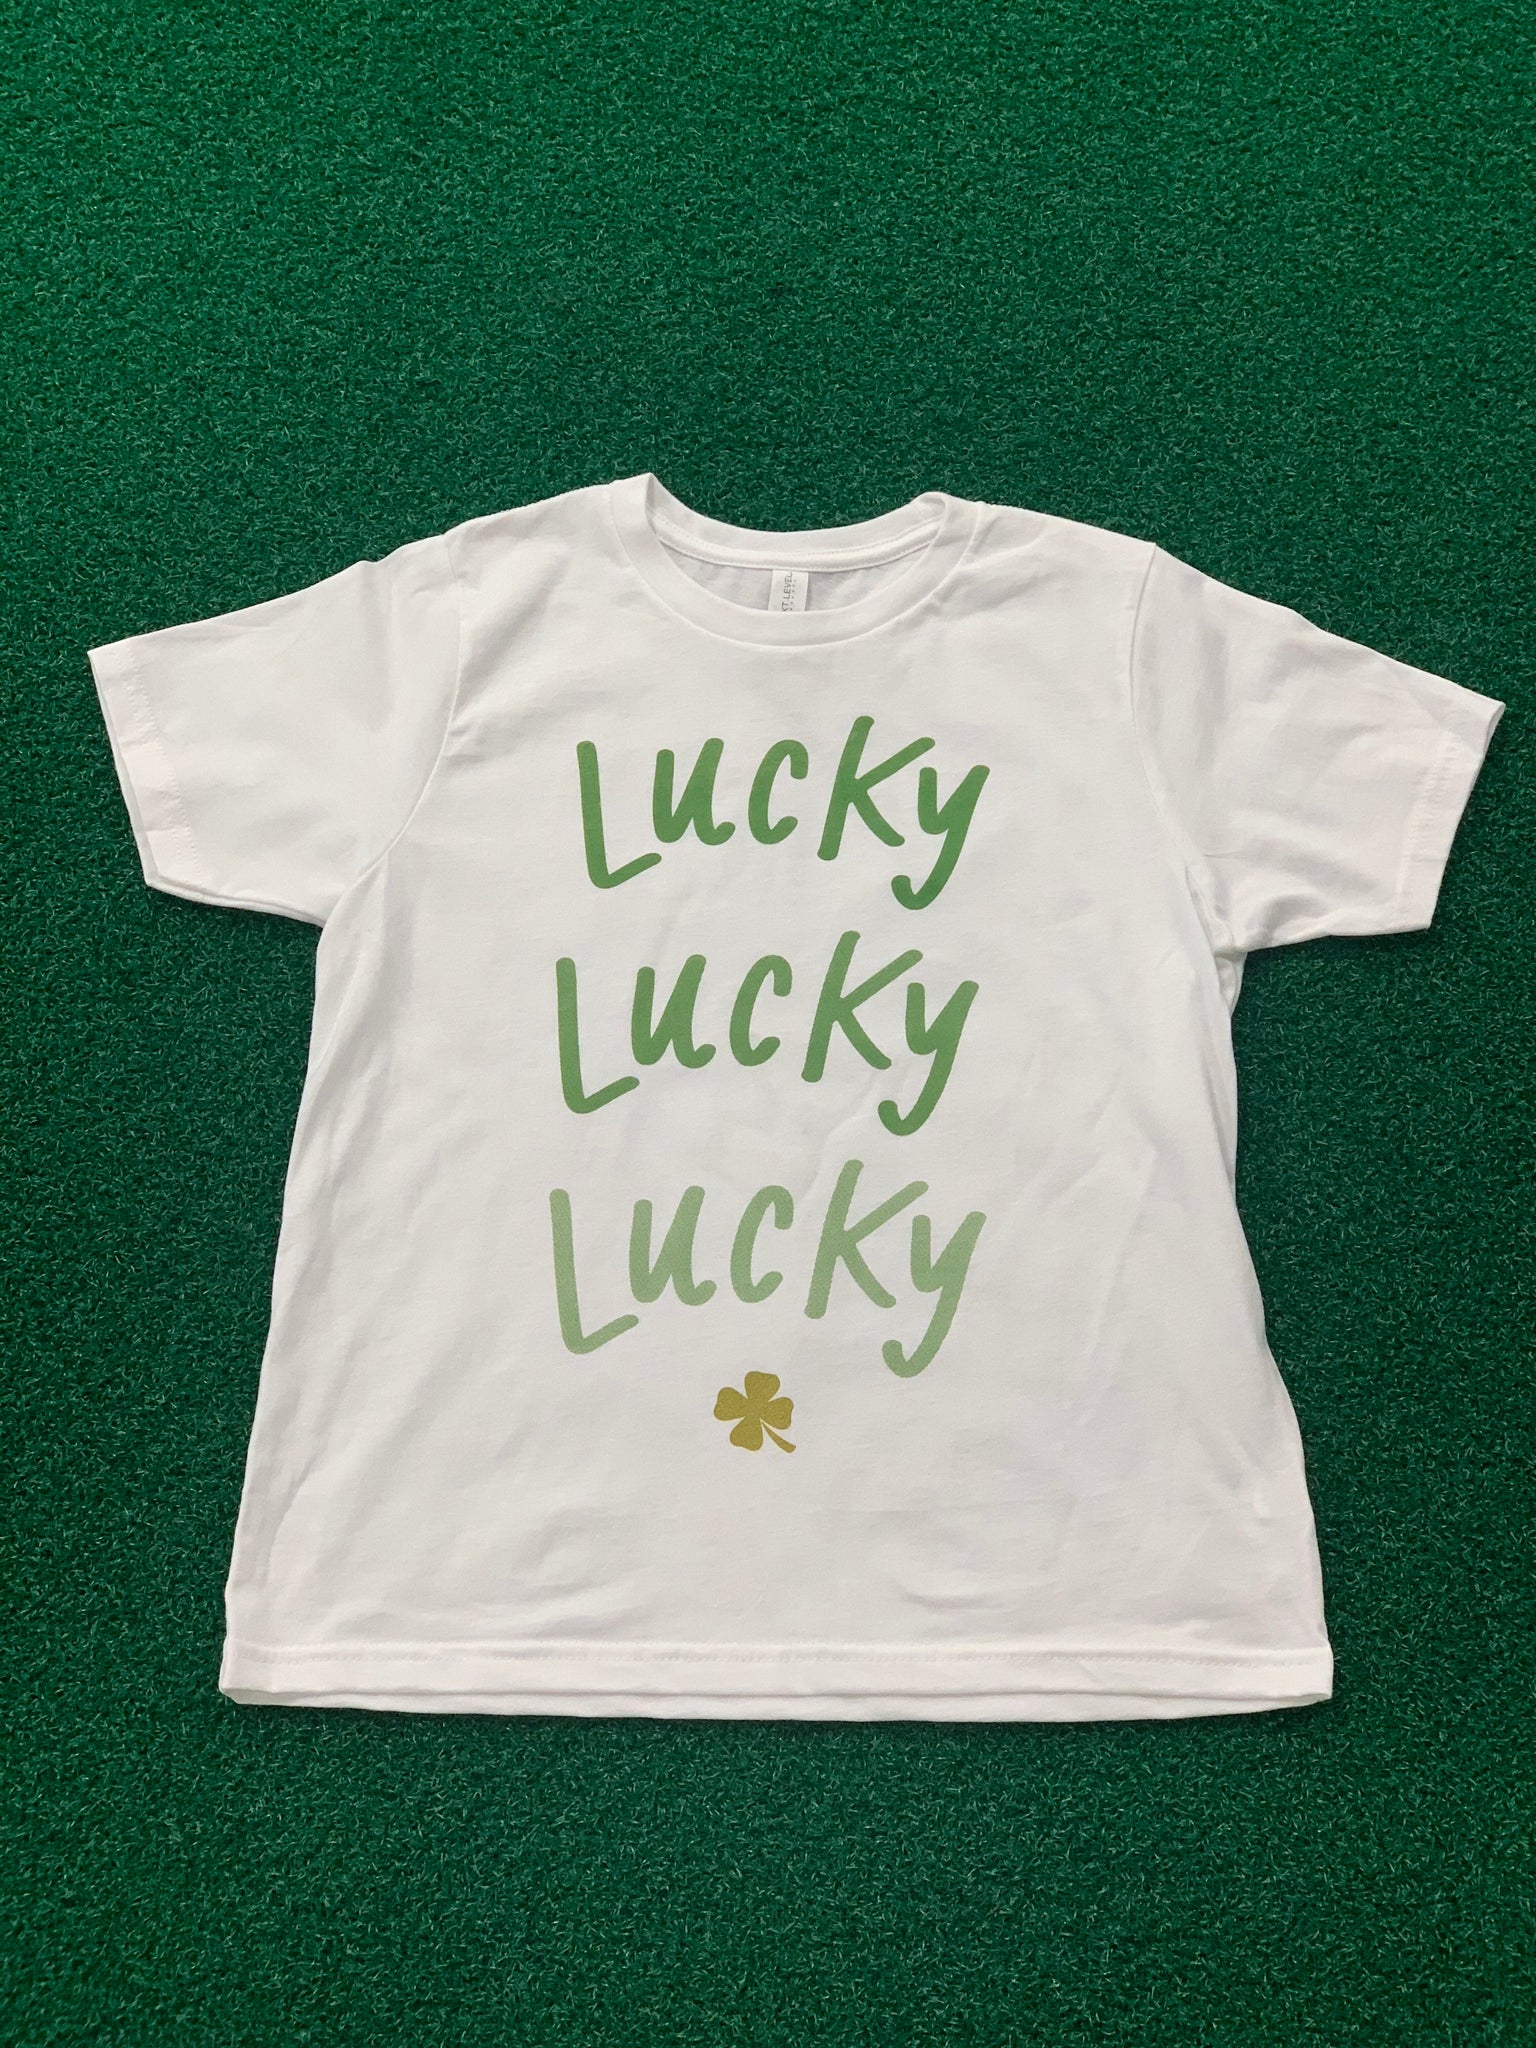 Lucky Lucky Lucky youth t-shirt